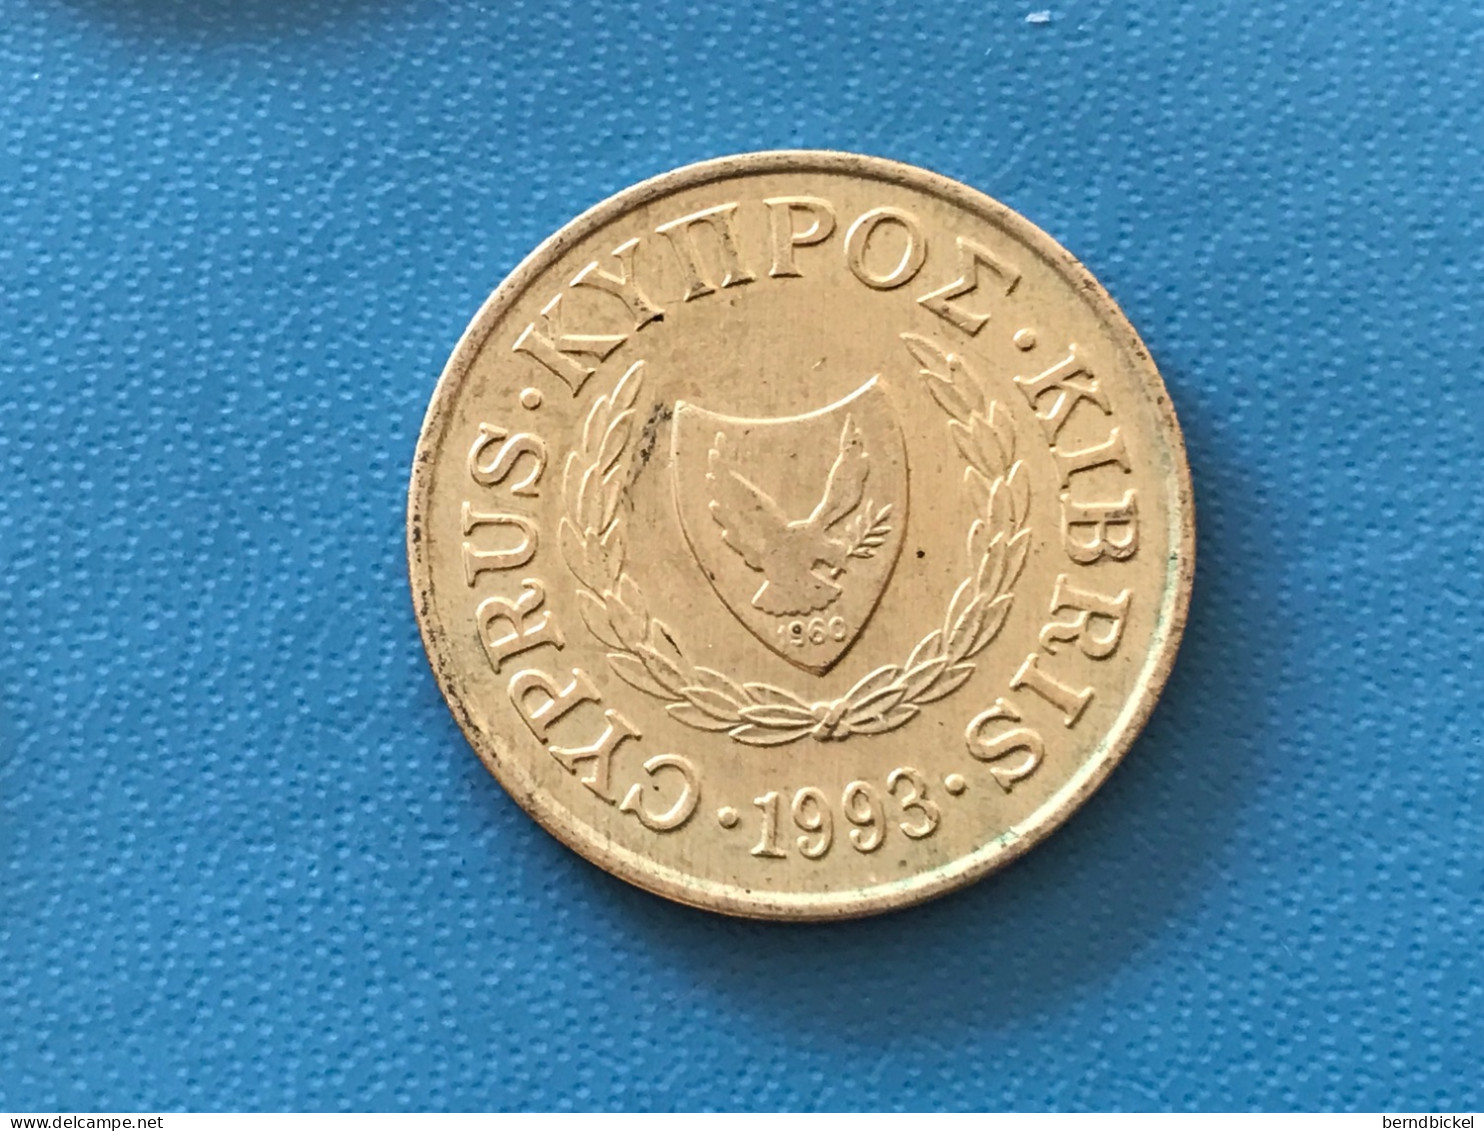 Münze Münzen Umlaufmünze Zypern 5 Cent 1993 - Cyprus